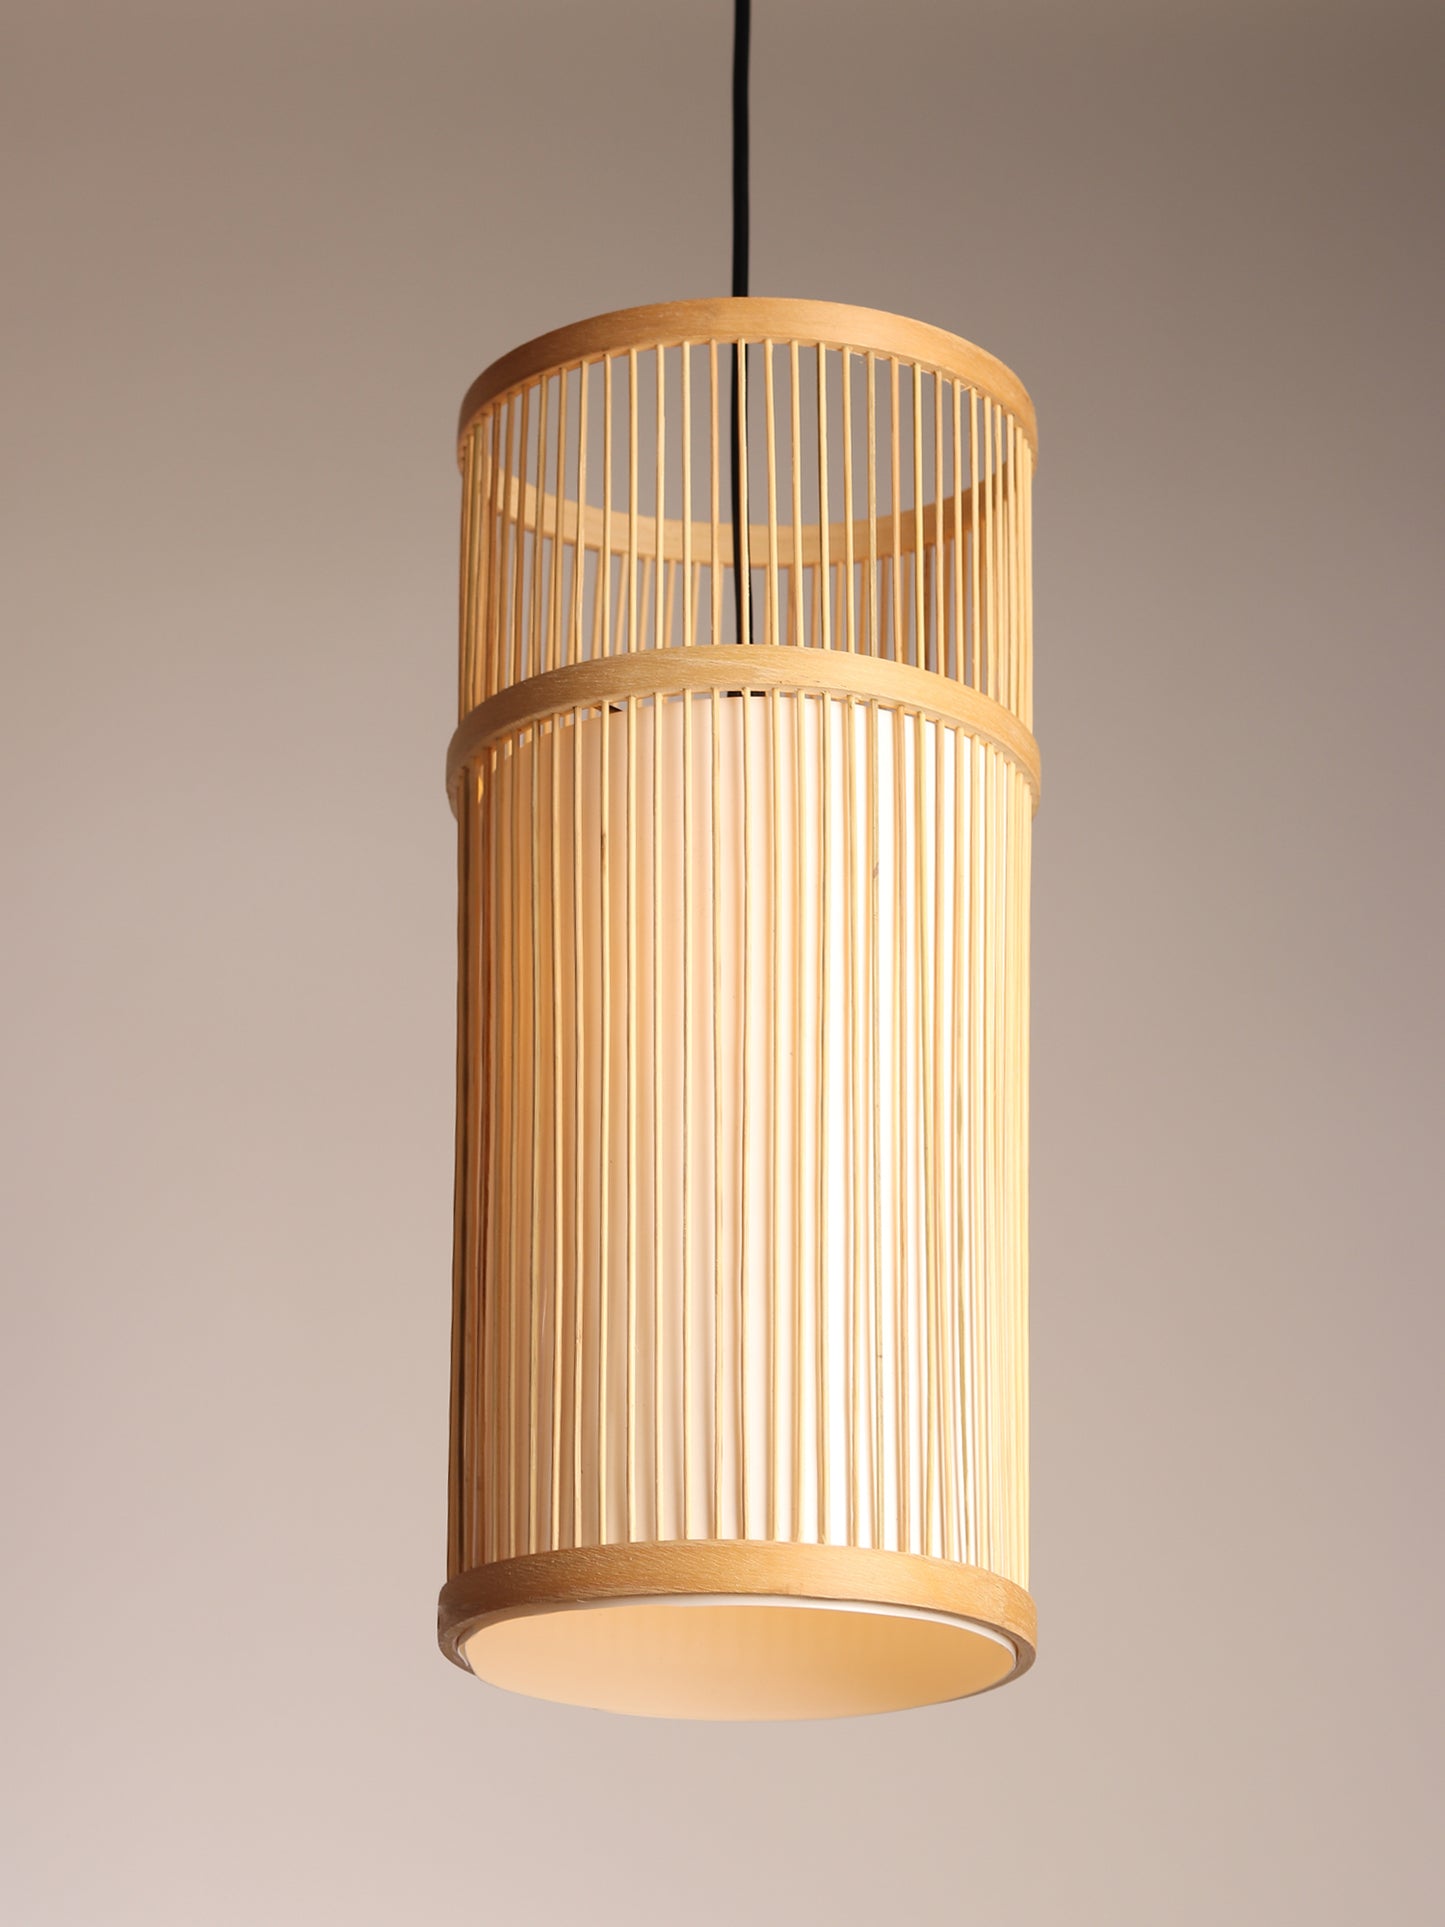 Buy Bamboo Rattan Tabletop Lamp